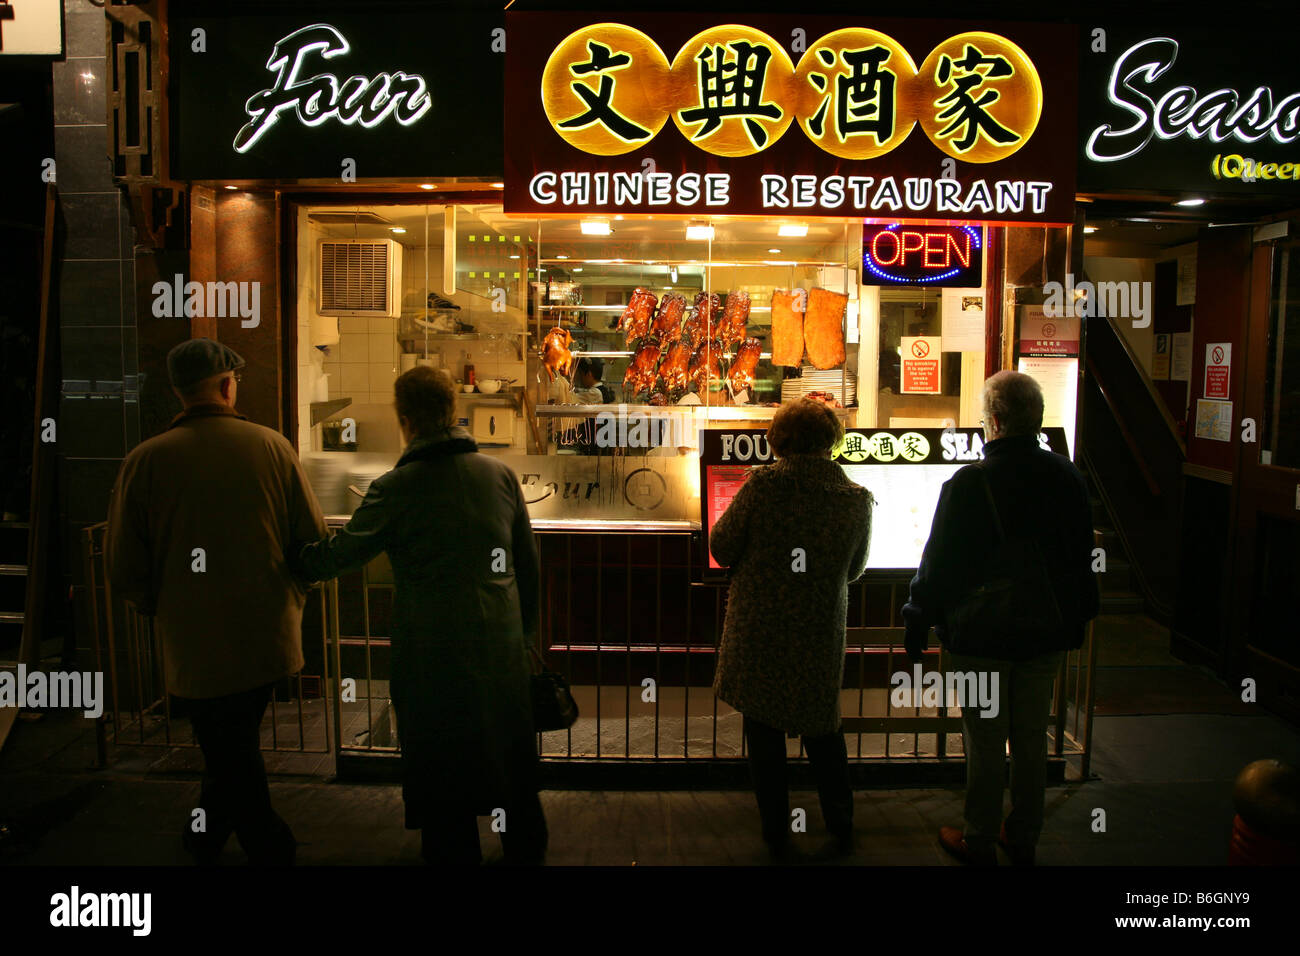 Le four seasons restaurant chinois dans China town Londres Banque D'Images